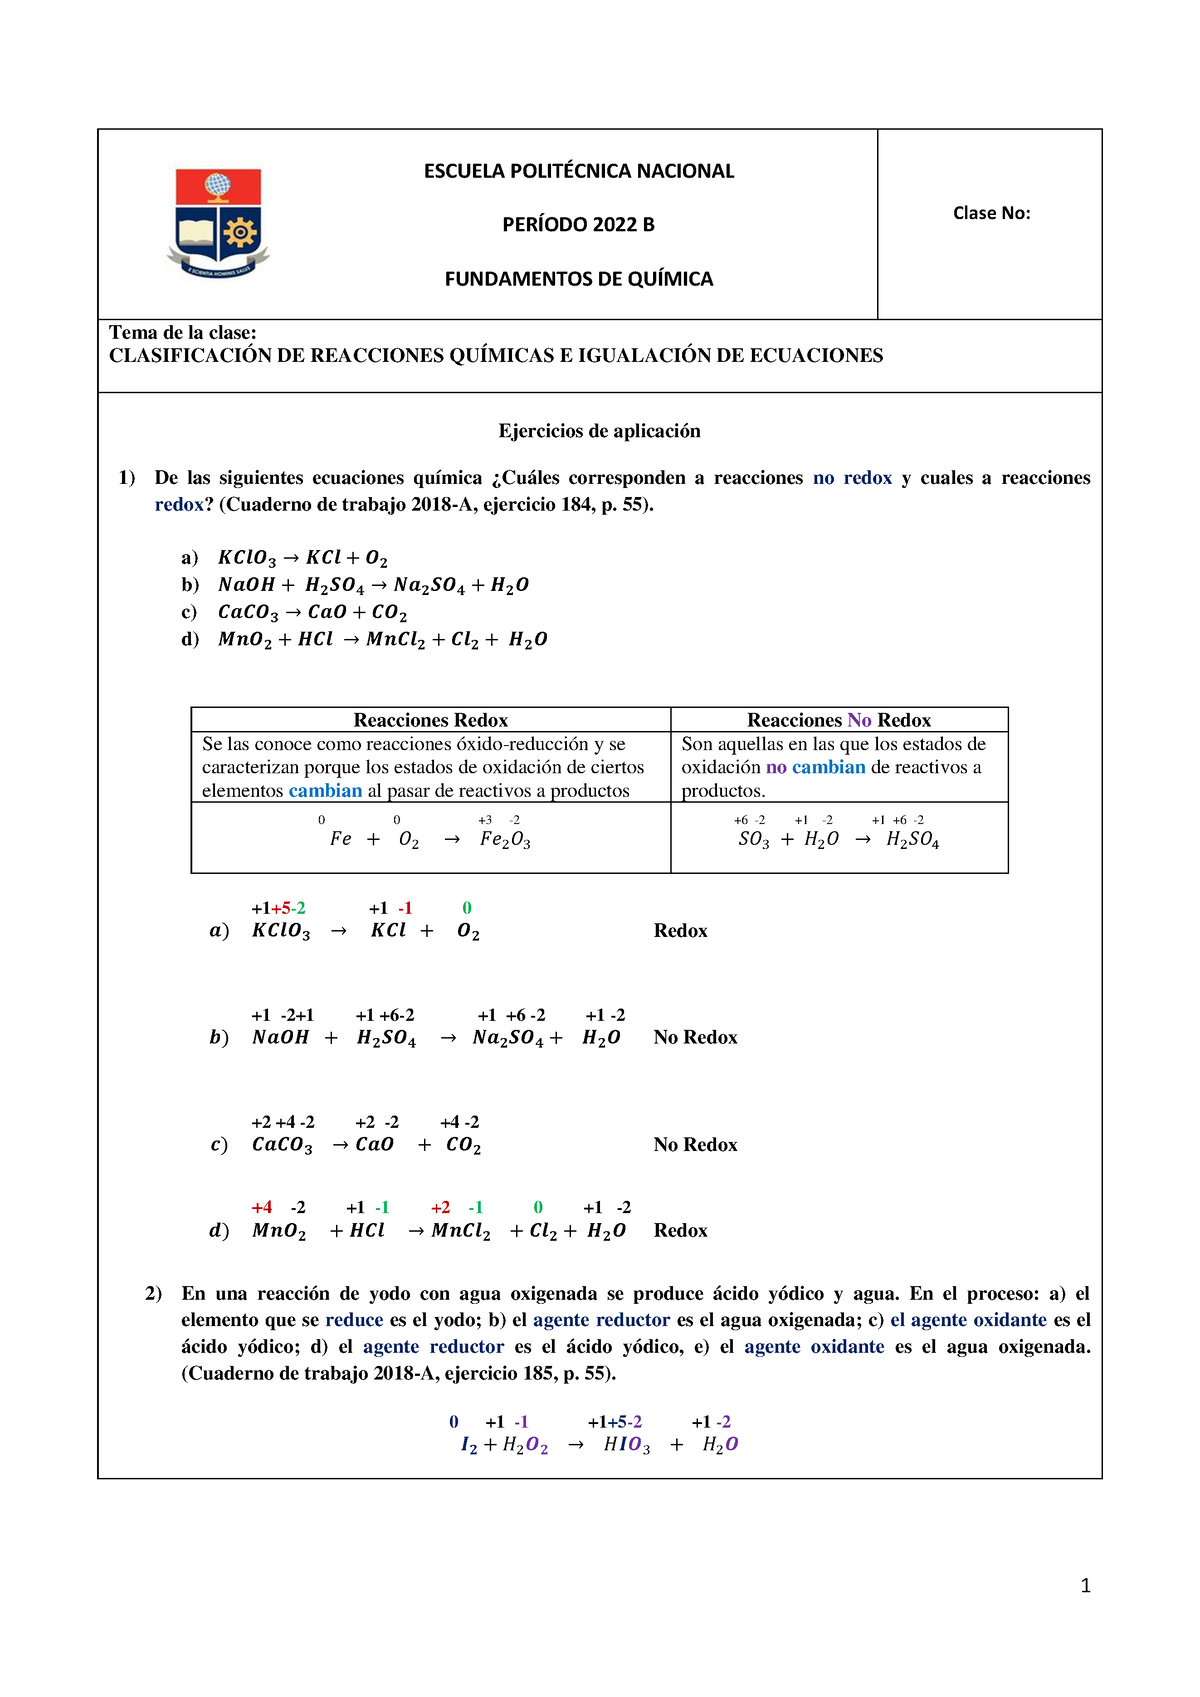 Unidad 5 Clasificación De Reacciones Químicas E Igualación De Ecuaciones Ejercicios Resueltos 9775